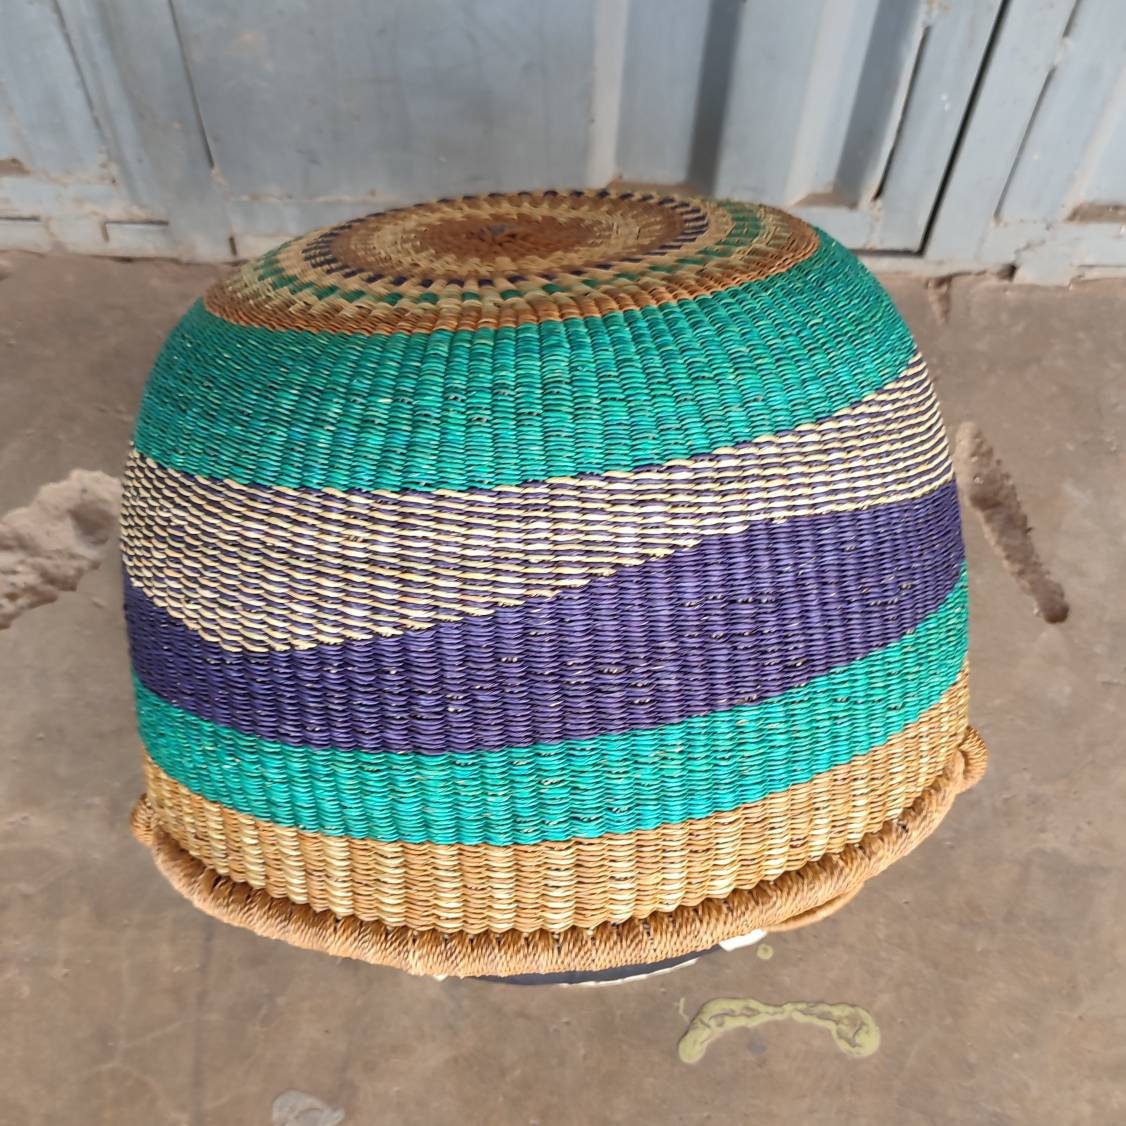 Bolga Basket, African Basket, Handmade Basket, Ghana Basket, Tote Bag, Gift for her, Personalized gift 001